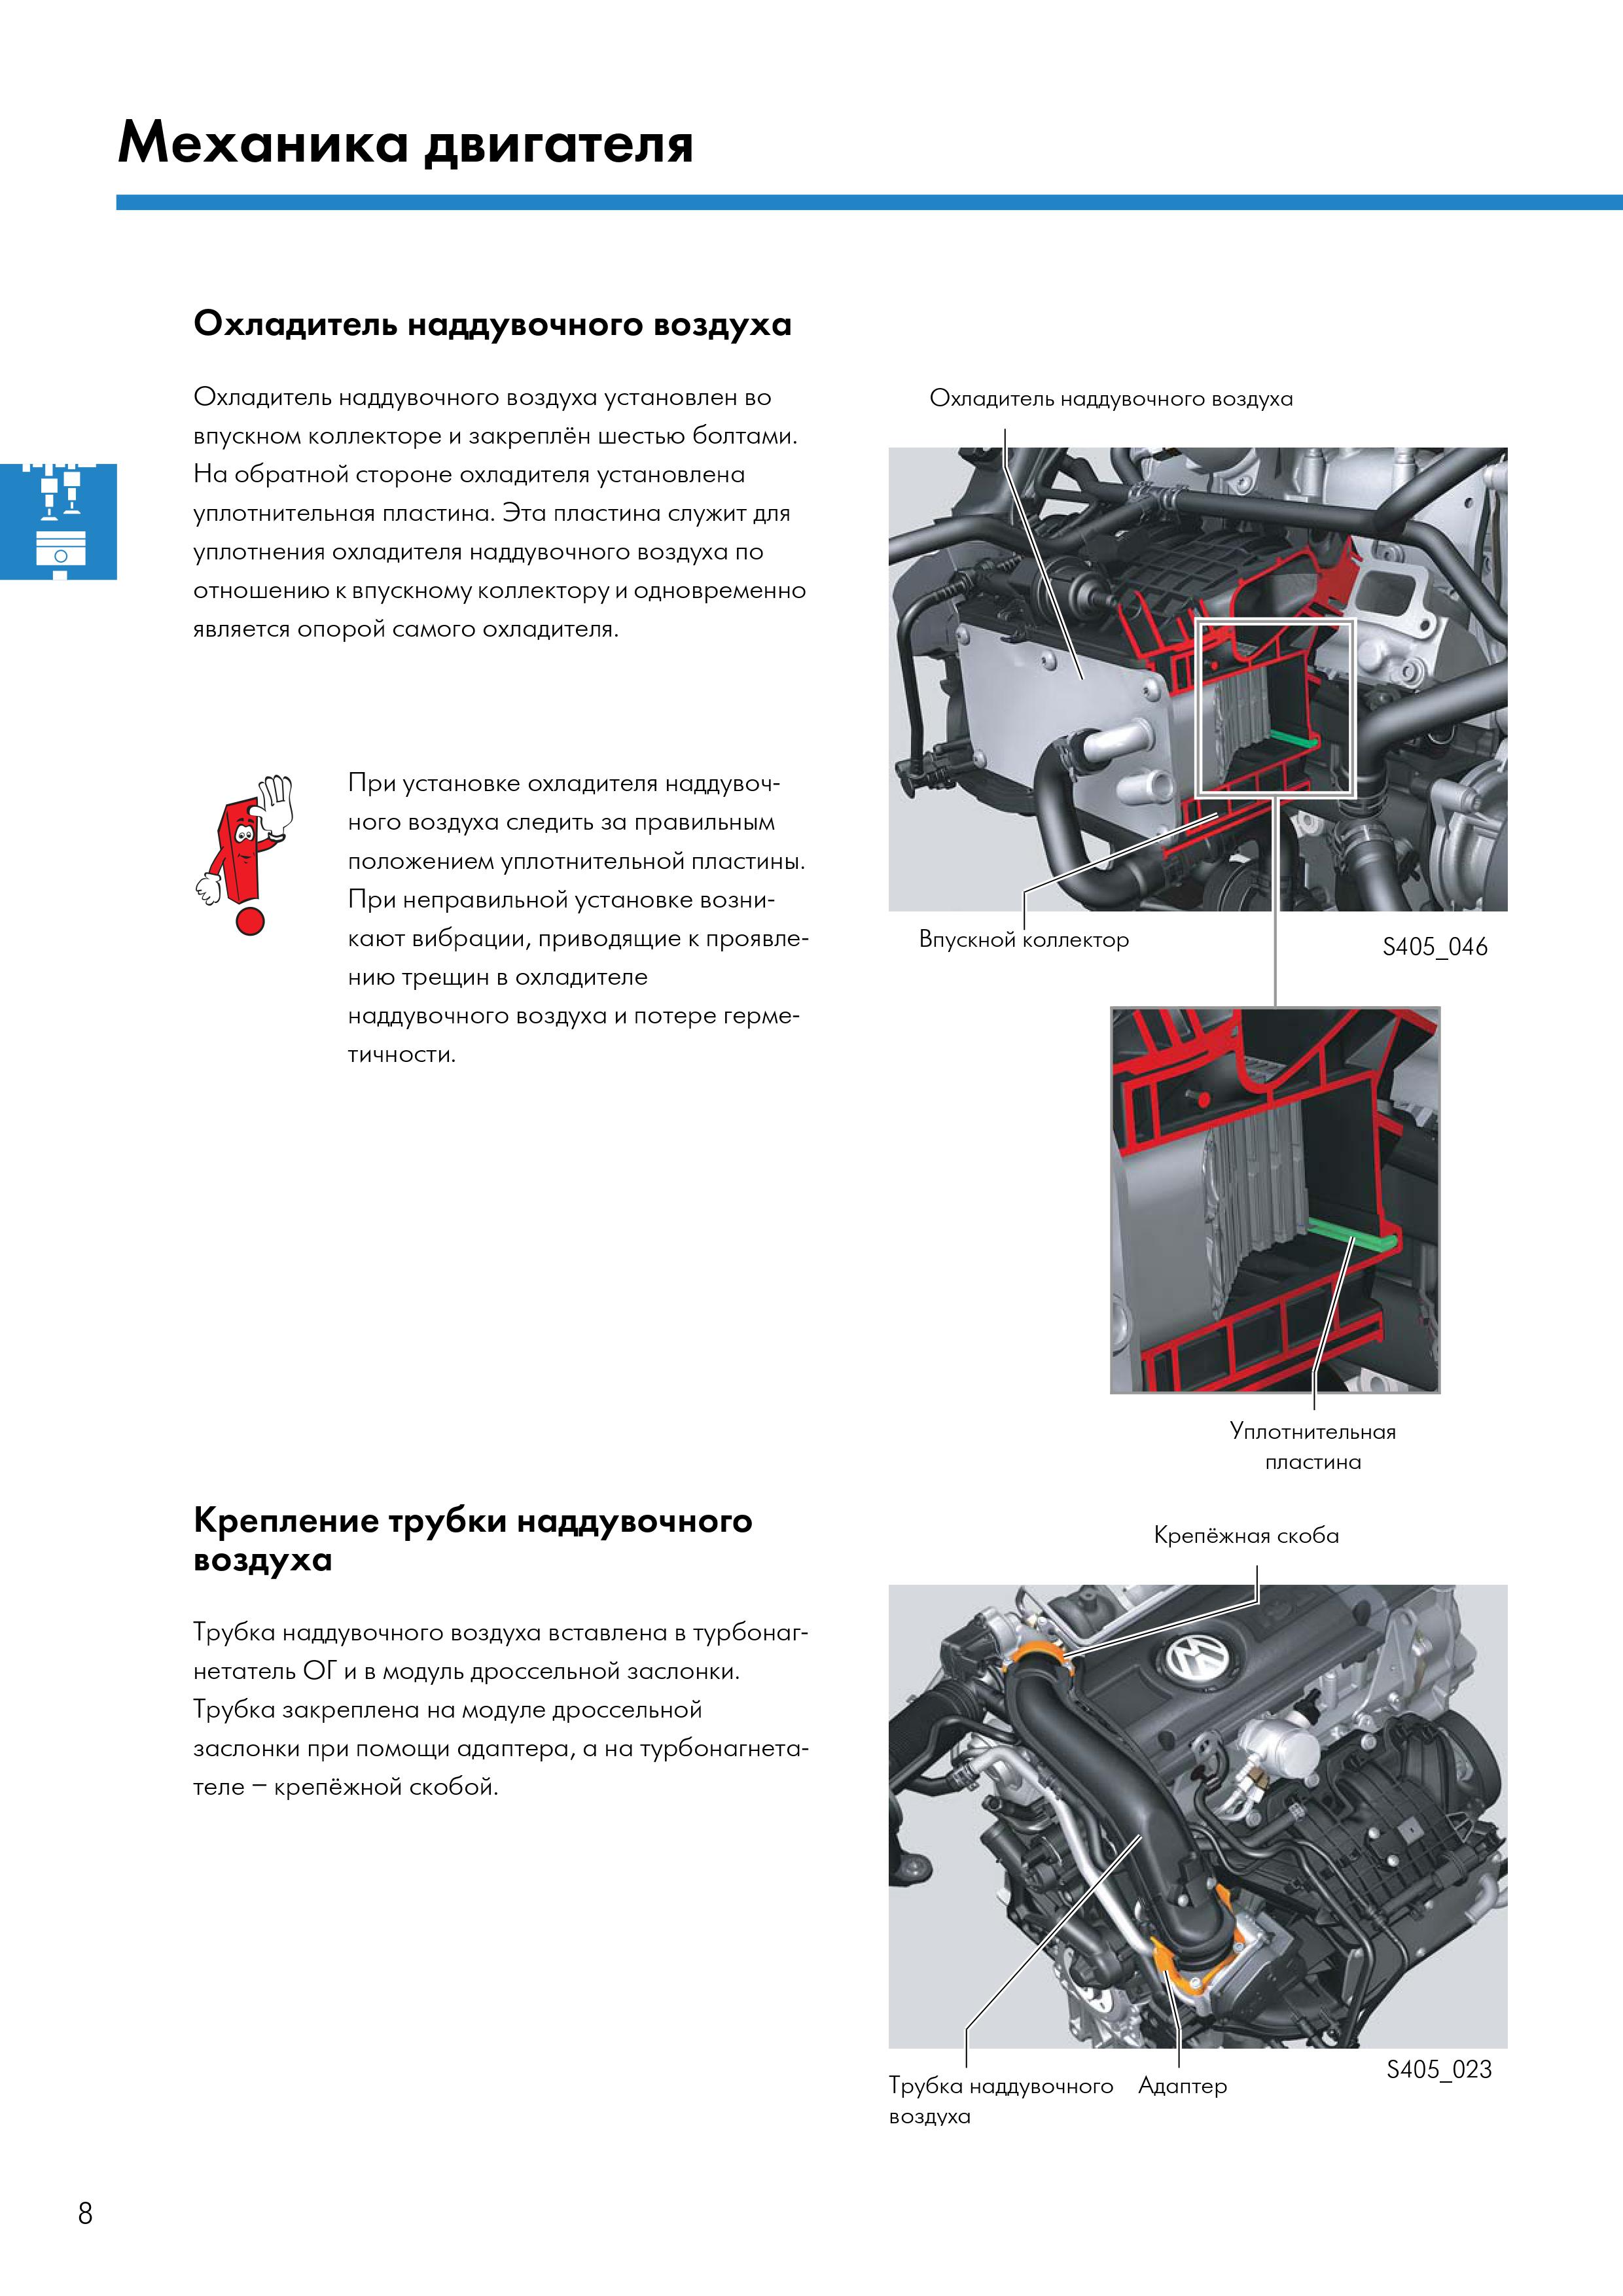 Двигатель chpa - характеристики, проблемы, модификации и надежность